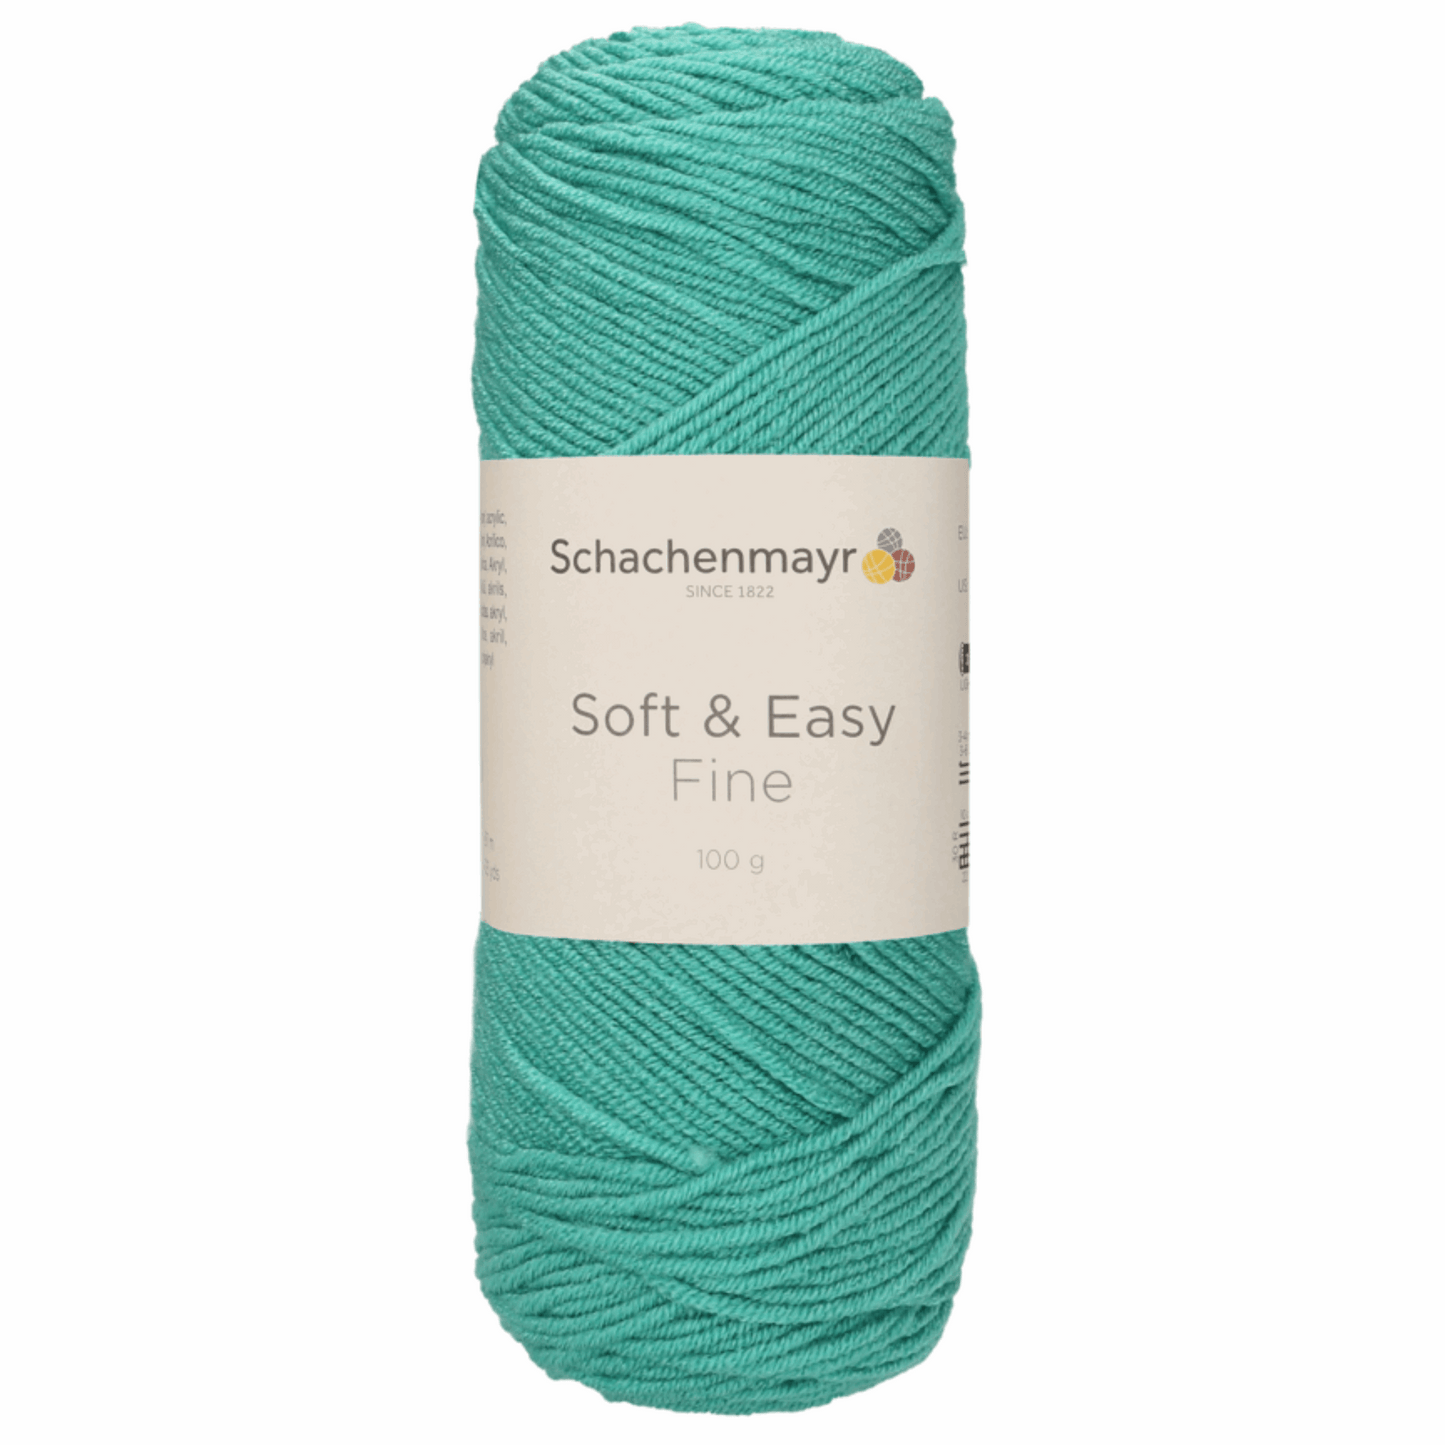 Schachenmayr Soft & Easy Fine 100g, 90402, Farbe Meergrün 65